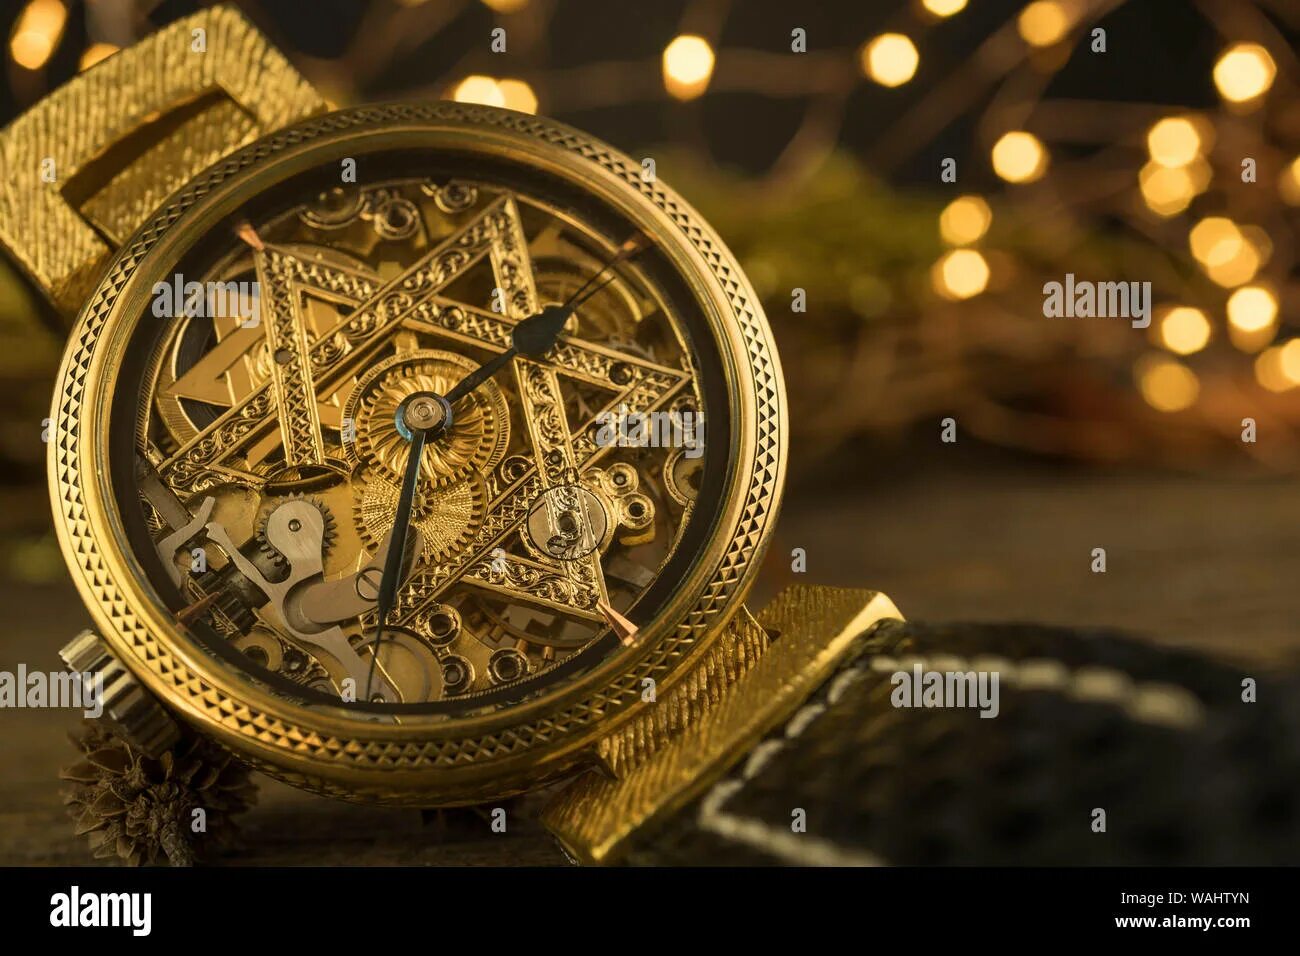 Часы звезда. Часы David Aster. Красивые часы звезда Давида.. Часы со звездой Давида купить. Часы со звездой